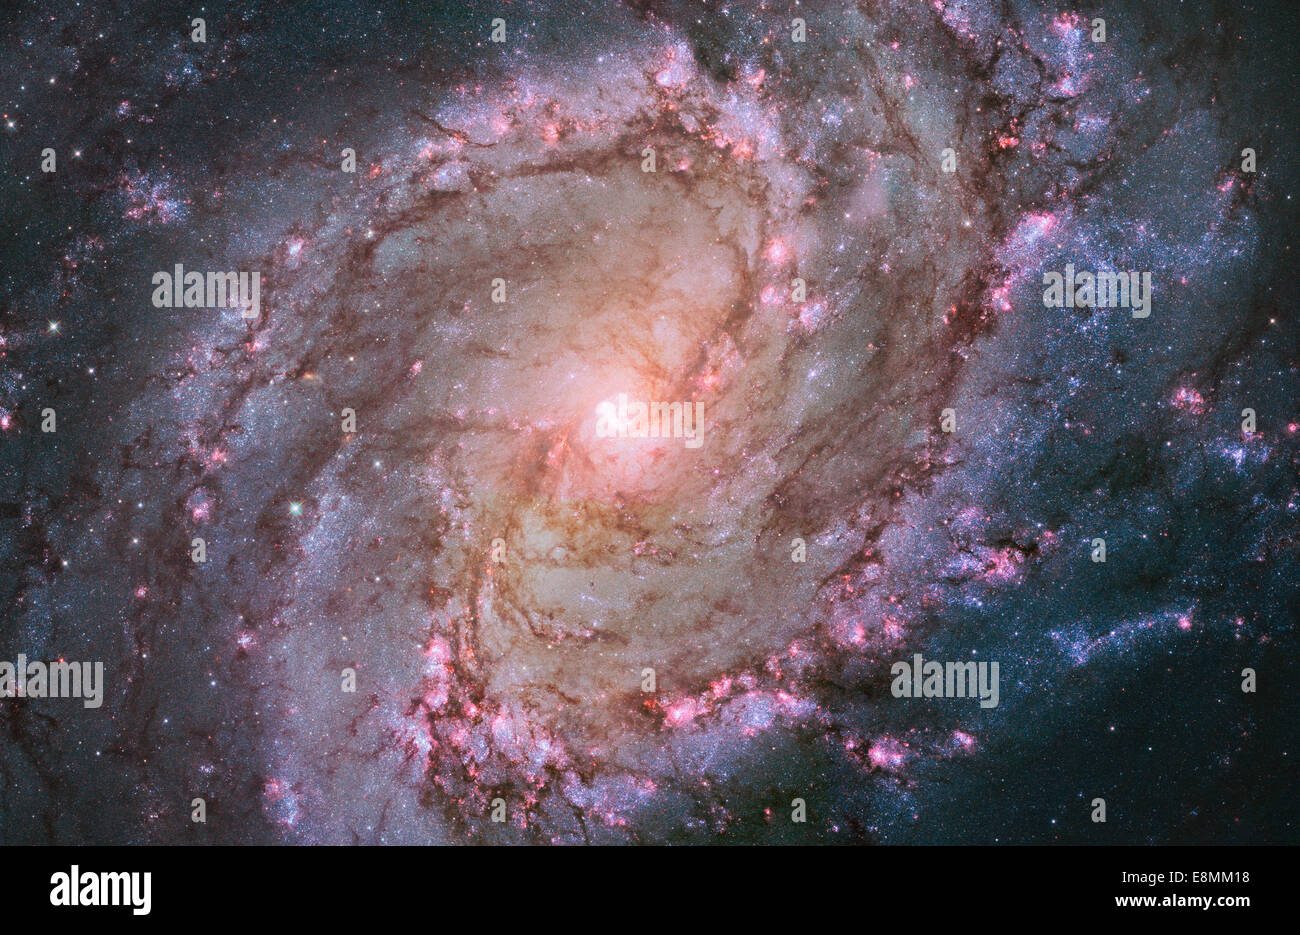 La vibrante magentas et blues dans cette image de Hubble de la galaxie spirale M83 révèlent que la galaxie est en feu avec star f Banque D'Images